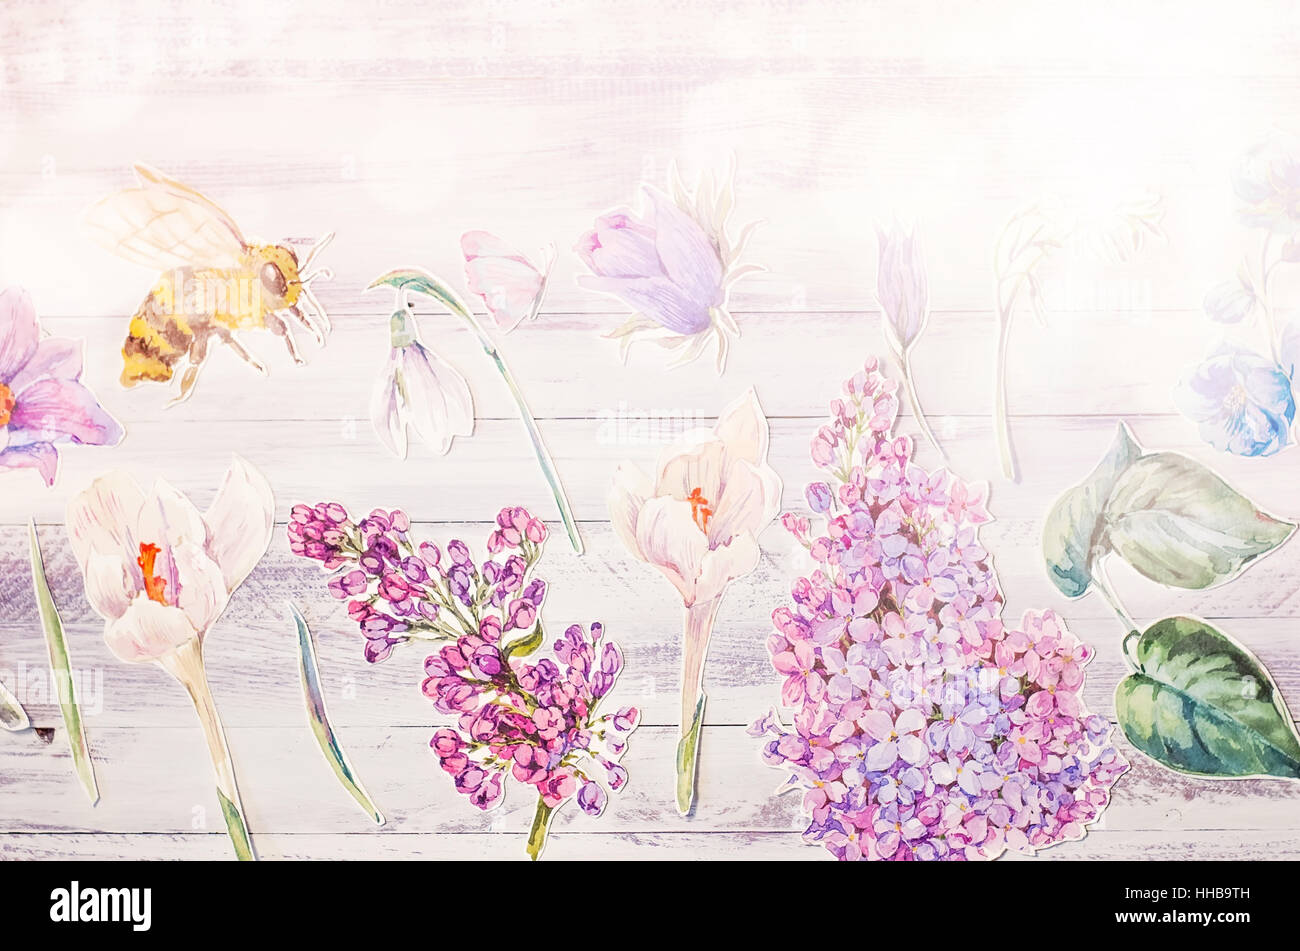 Frühling Blumendekoration mit Aquarell Papier lila Blüten auf weißem rustikalen hölzernen Grund, natürliche Collage, Draufsicht, Textfreiraum, selektive Fo Stockfoto